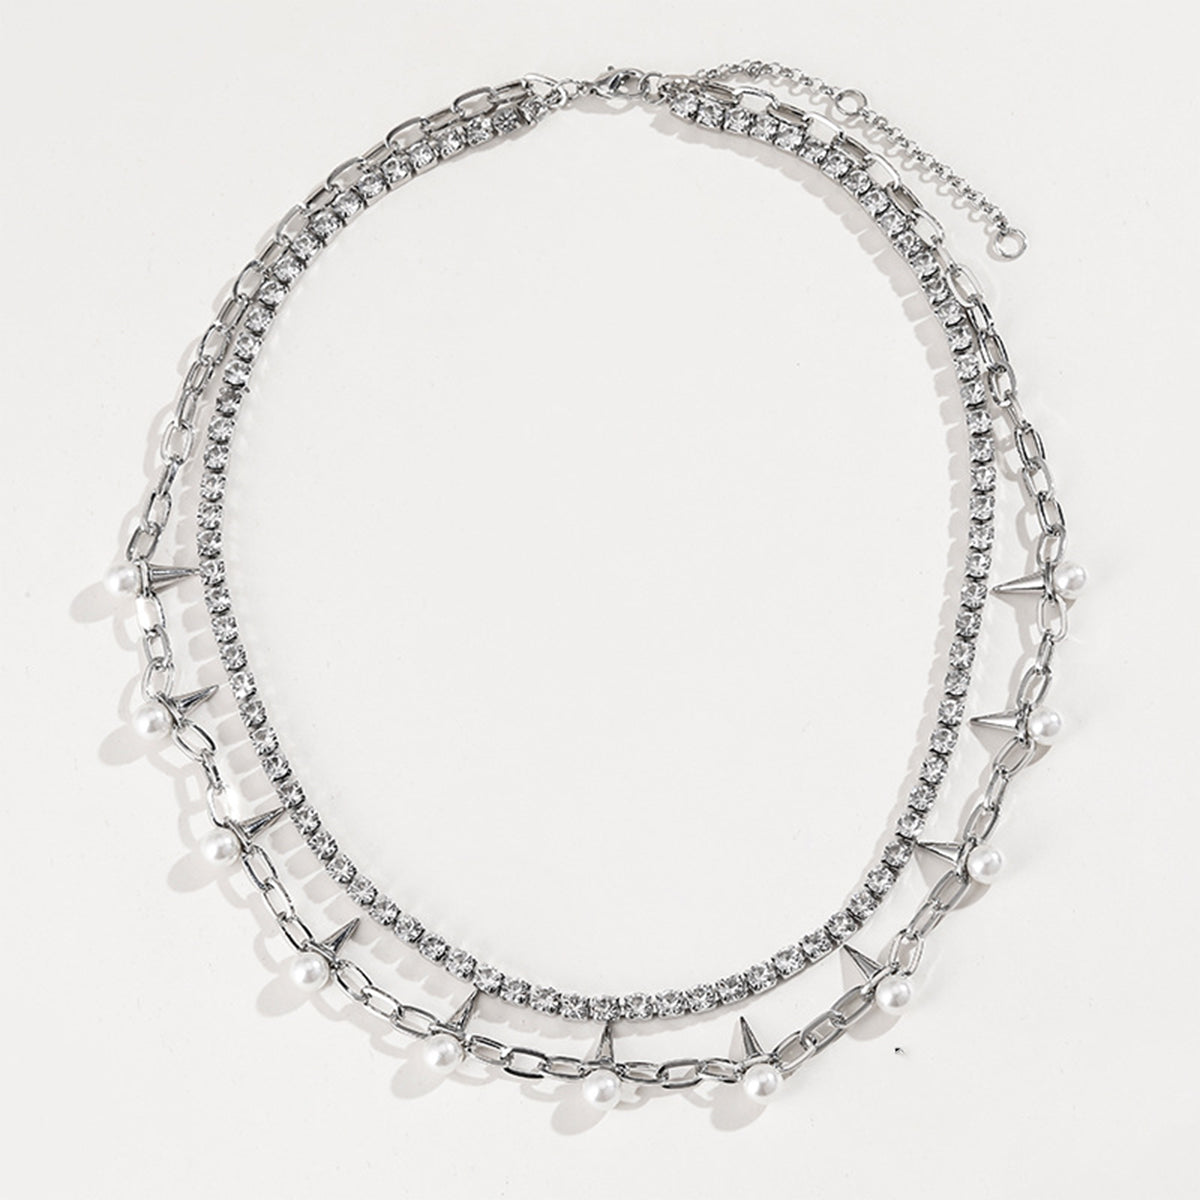 Rhinestone Double-Layered Necklace